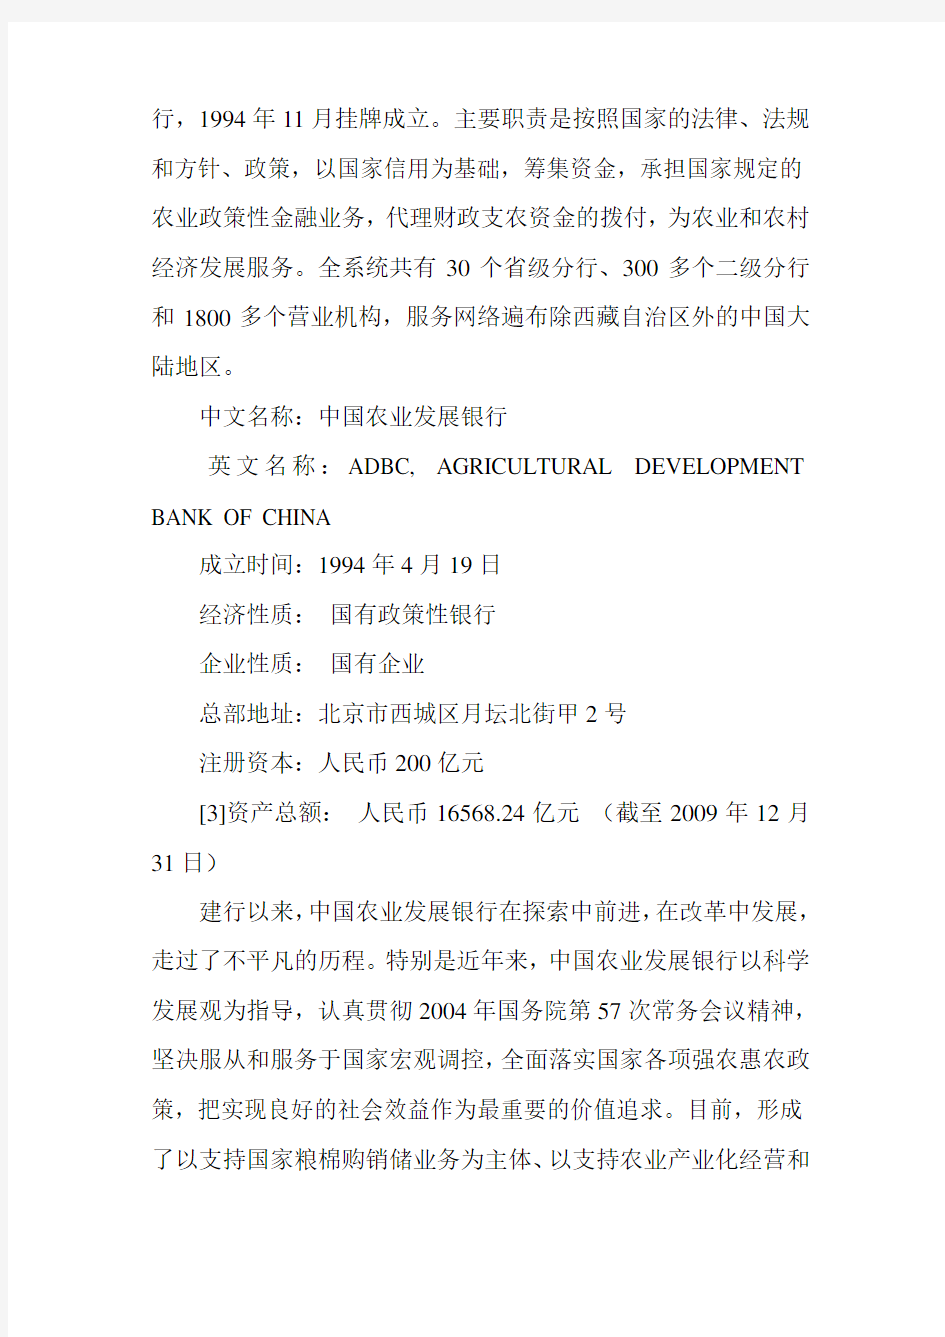 中国农业发展银行笔试题考试题复习资料